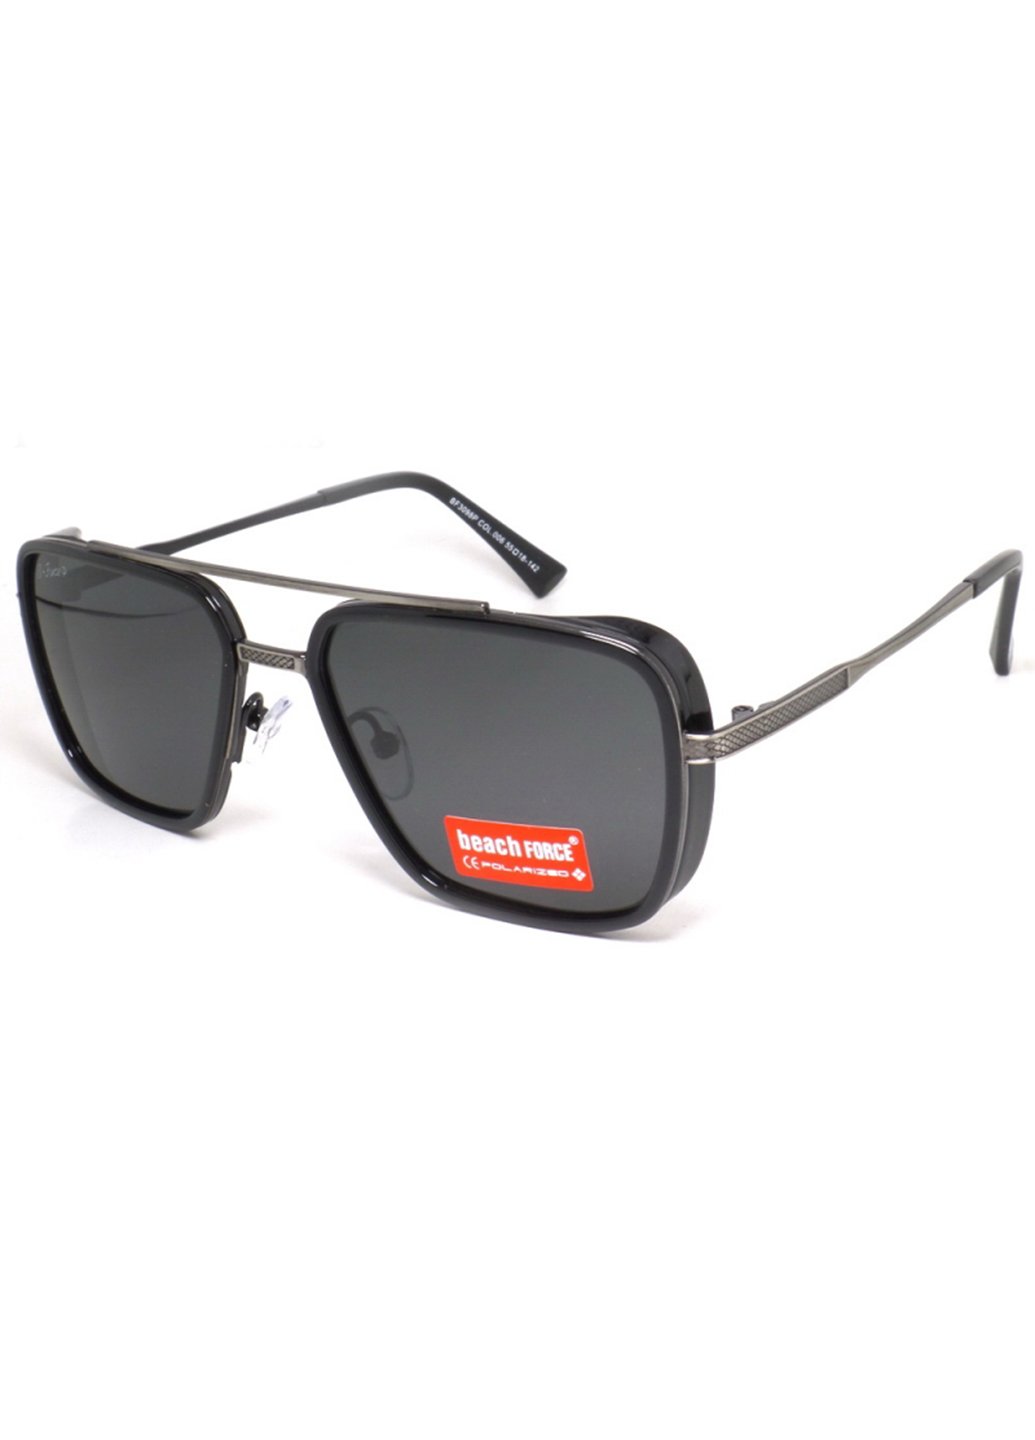 Купить Мужские солнцезащитные очки Beach Force BF3098P 140001 - Черный в интернет-магазине